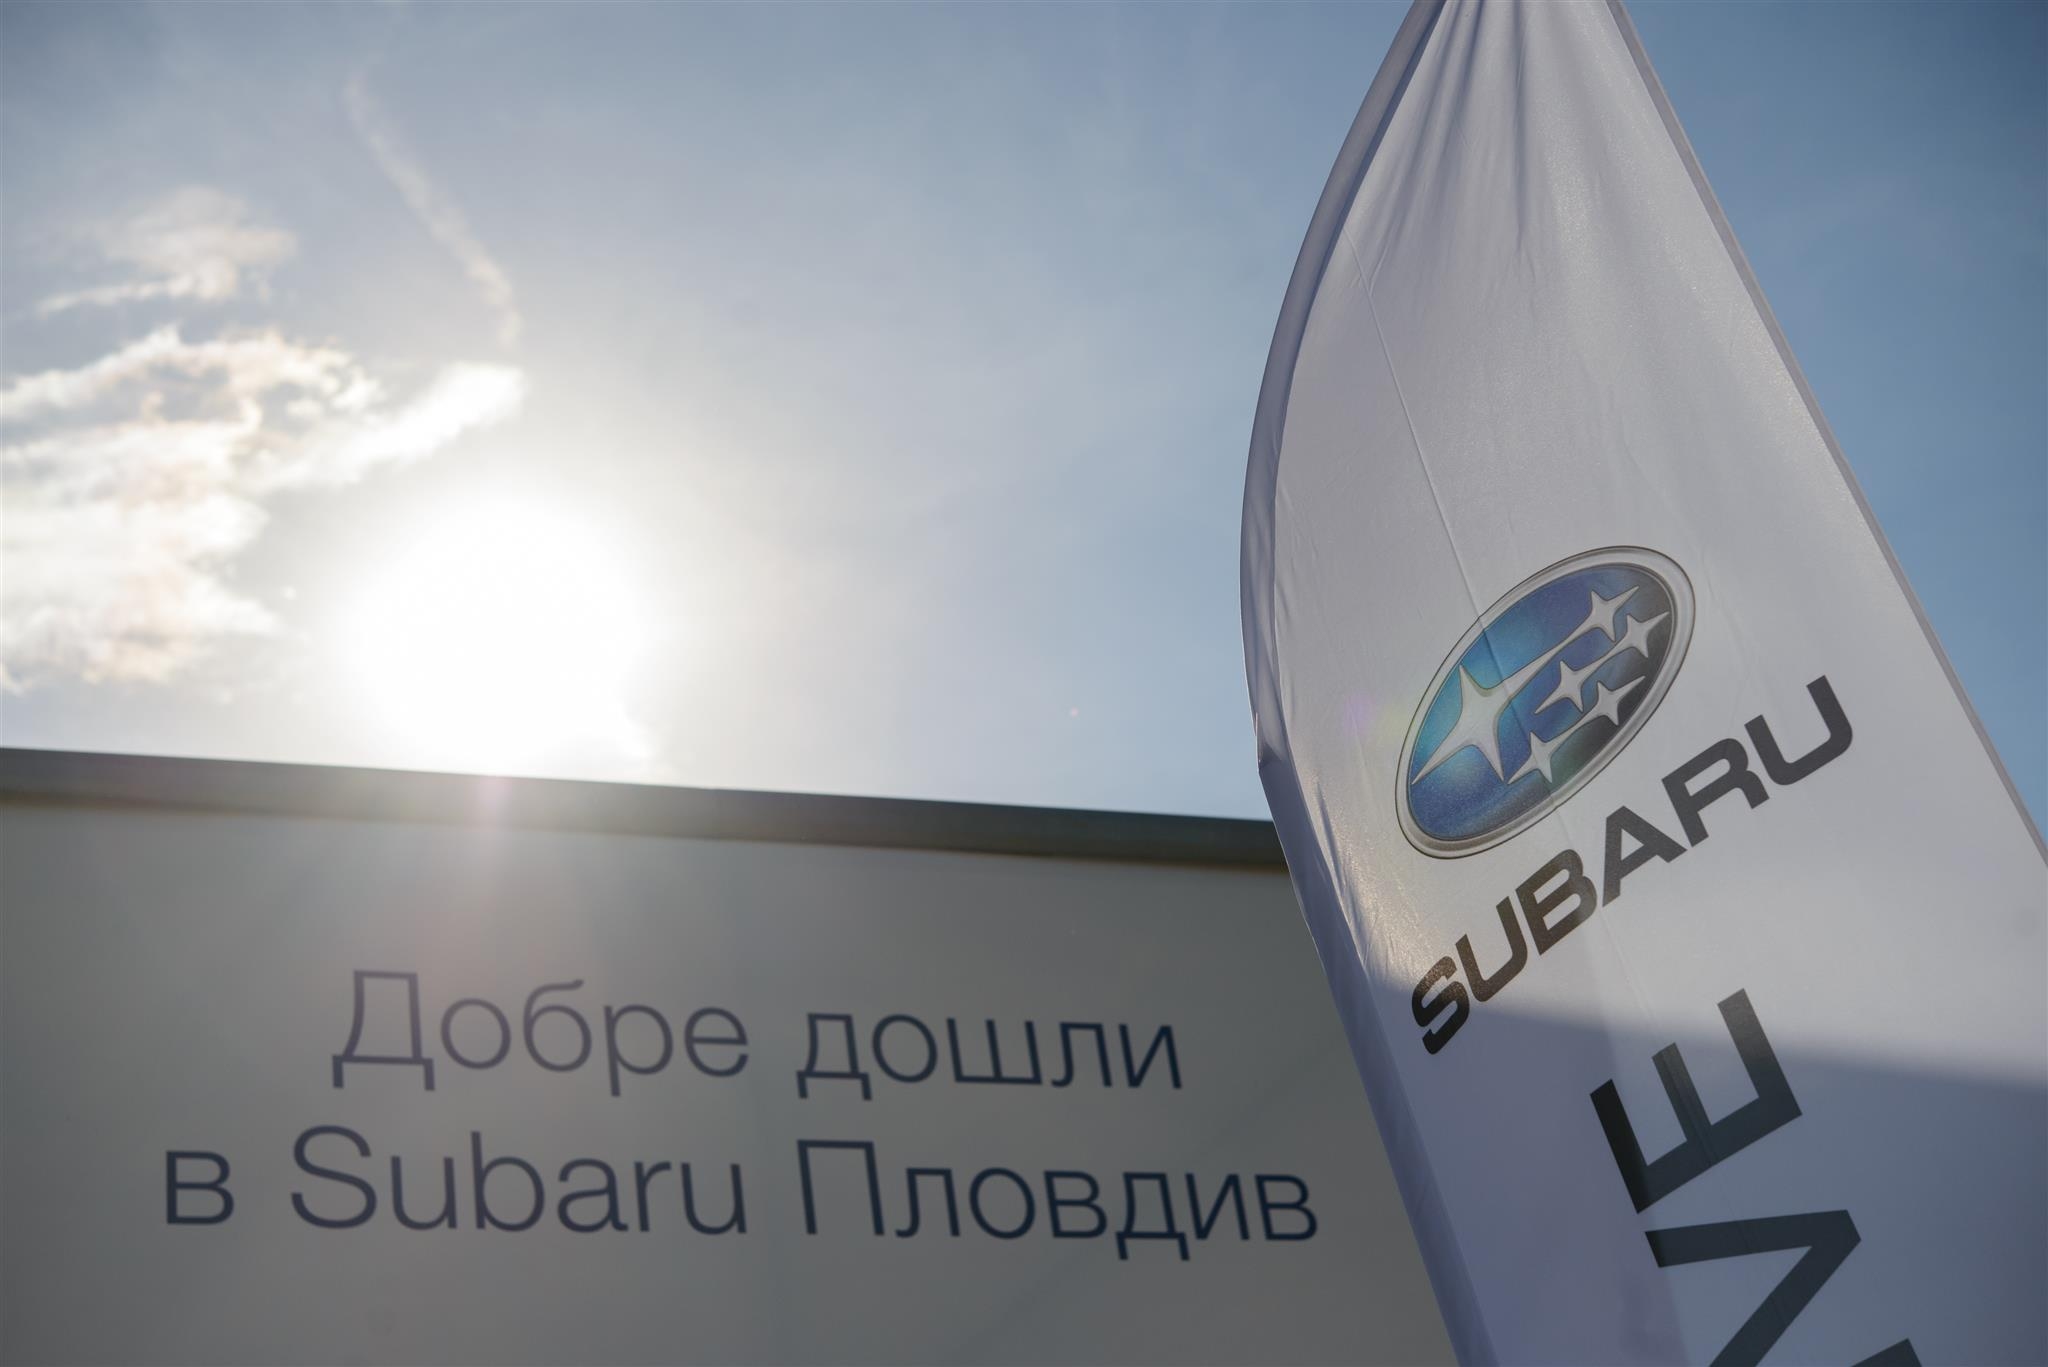 Бултрако Моторс клон Пловдив става официален дилър на високотехнологичната марка